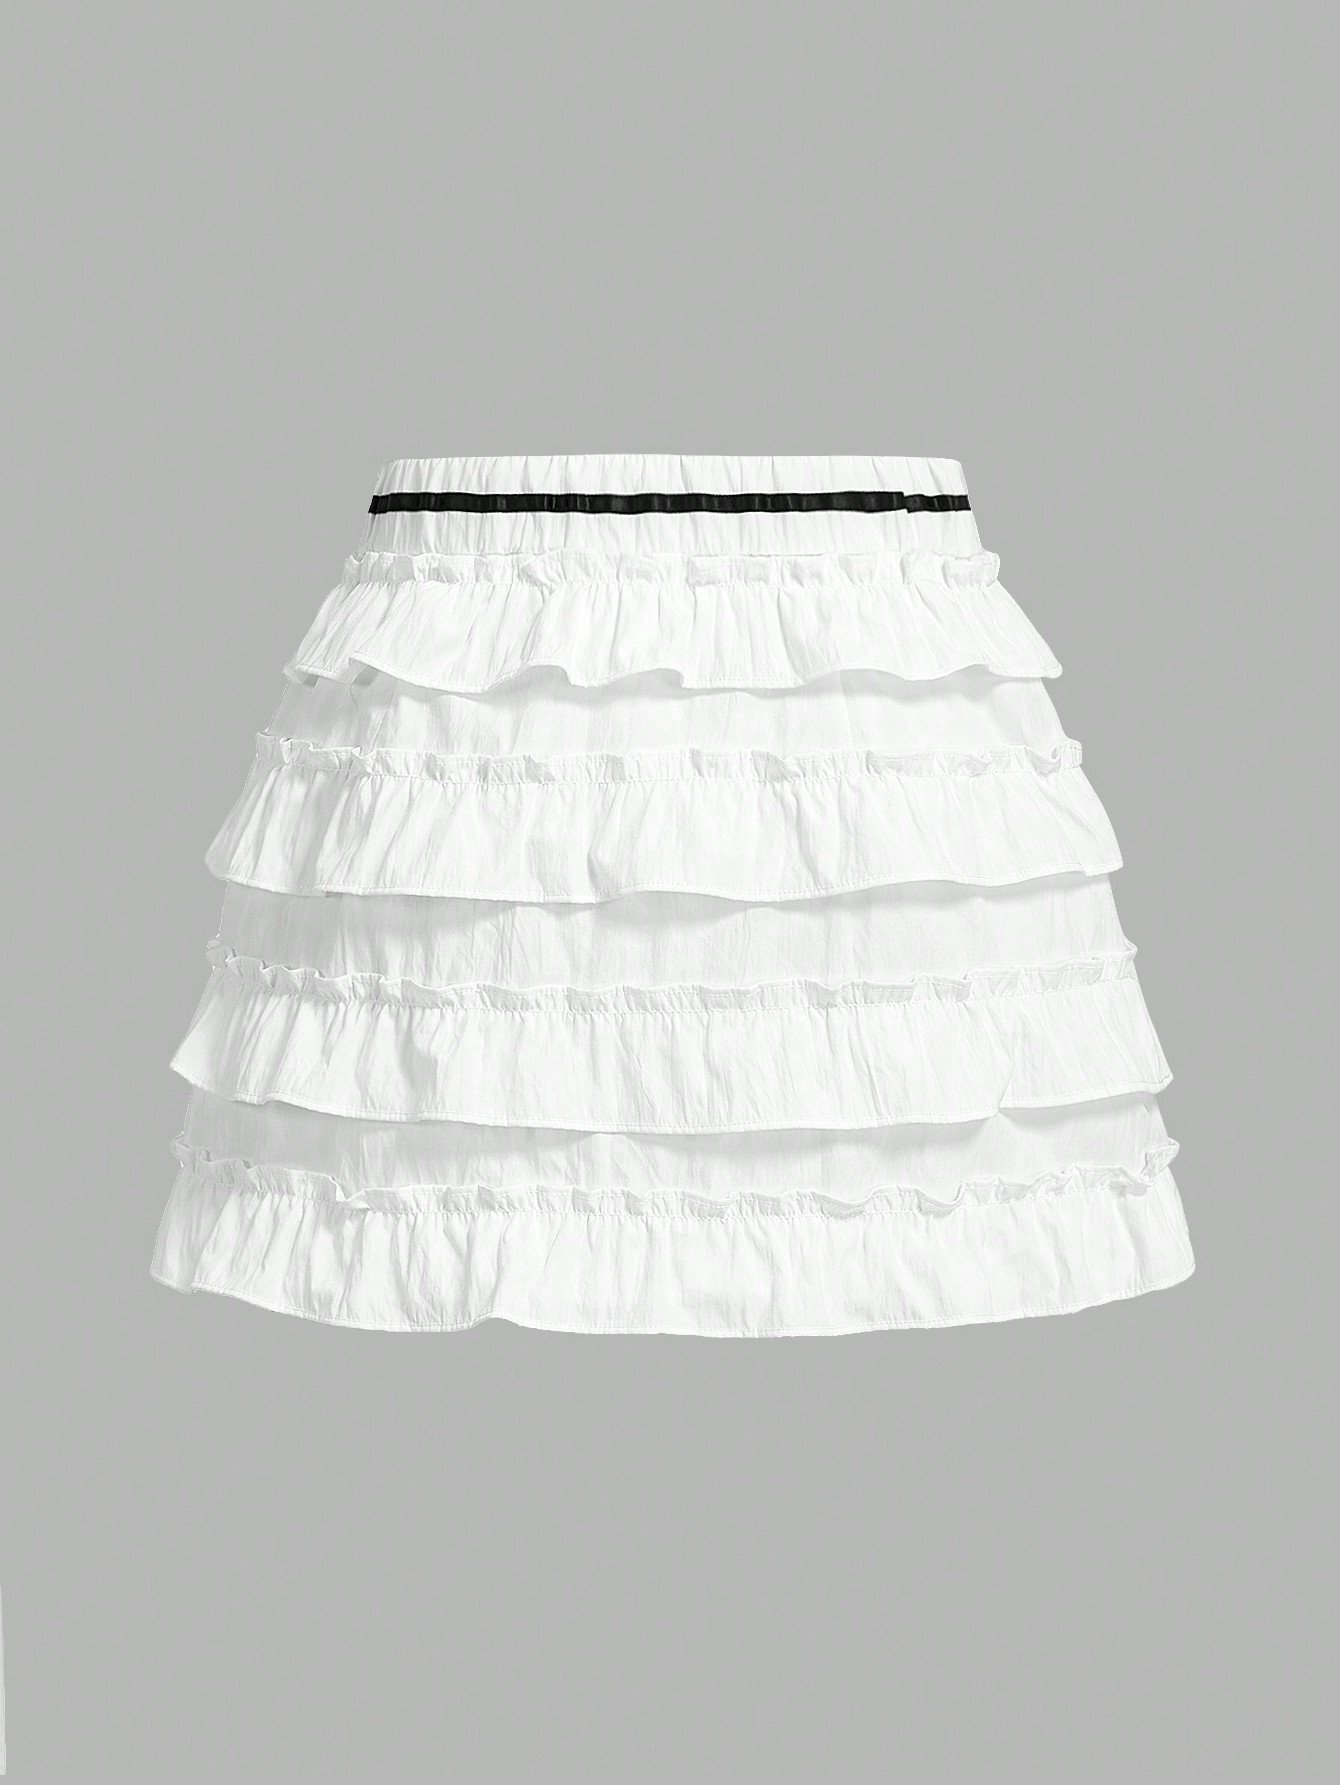 カワイイバレエスタイルのコケットサマースカート、ホワイト、レイヤードスカート、夏の愛らしいボトムス